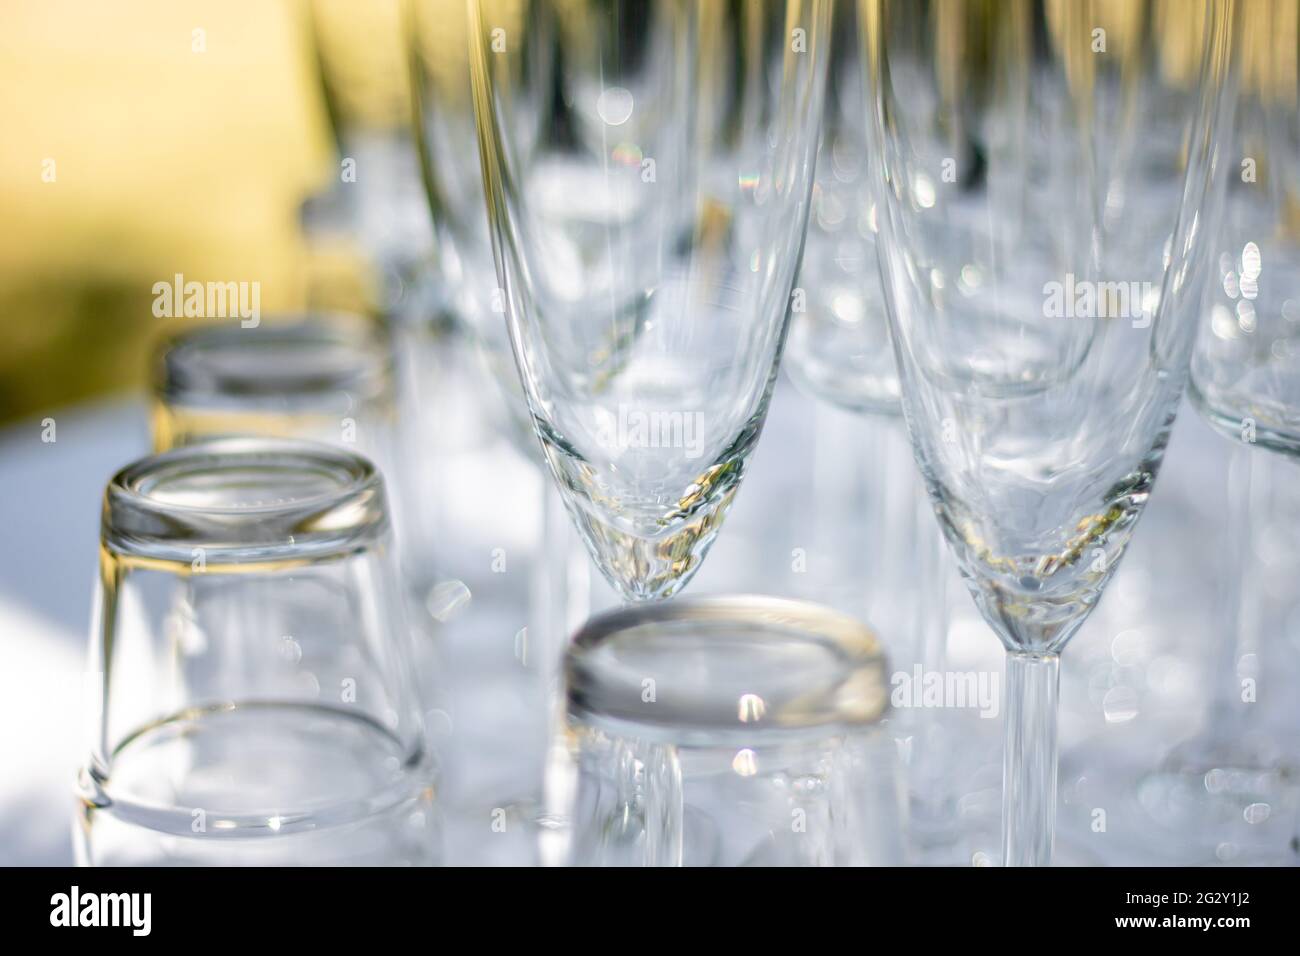 Gros plan de plusieurs verres, verres à champagne et verres à cocktail sur une table avec nappe blanche, gros plan sur des verres à champagne Banque D'Images